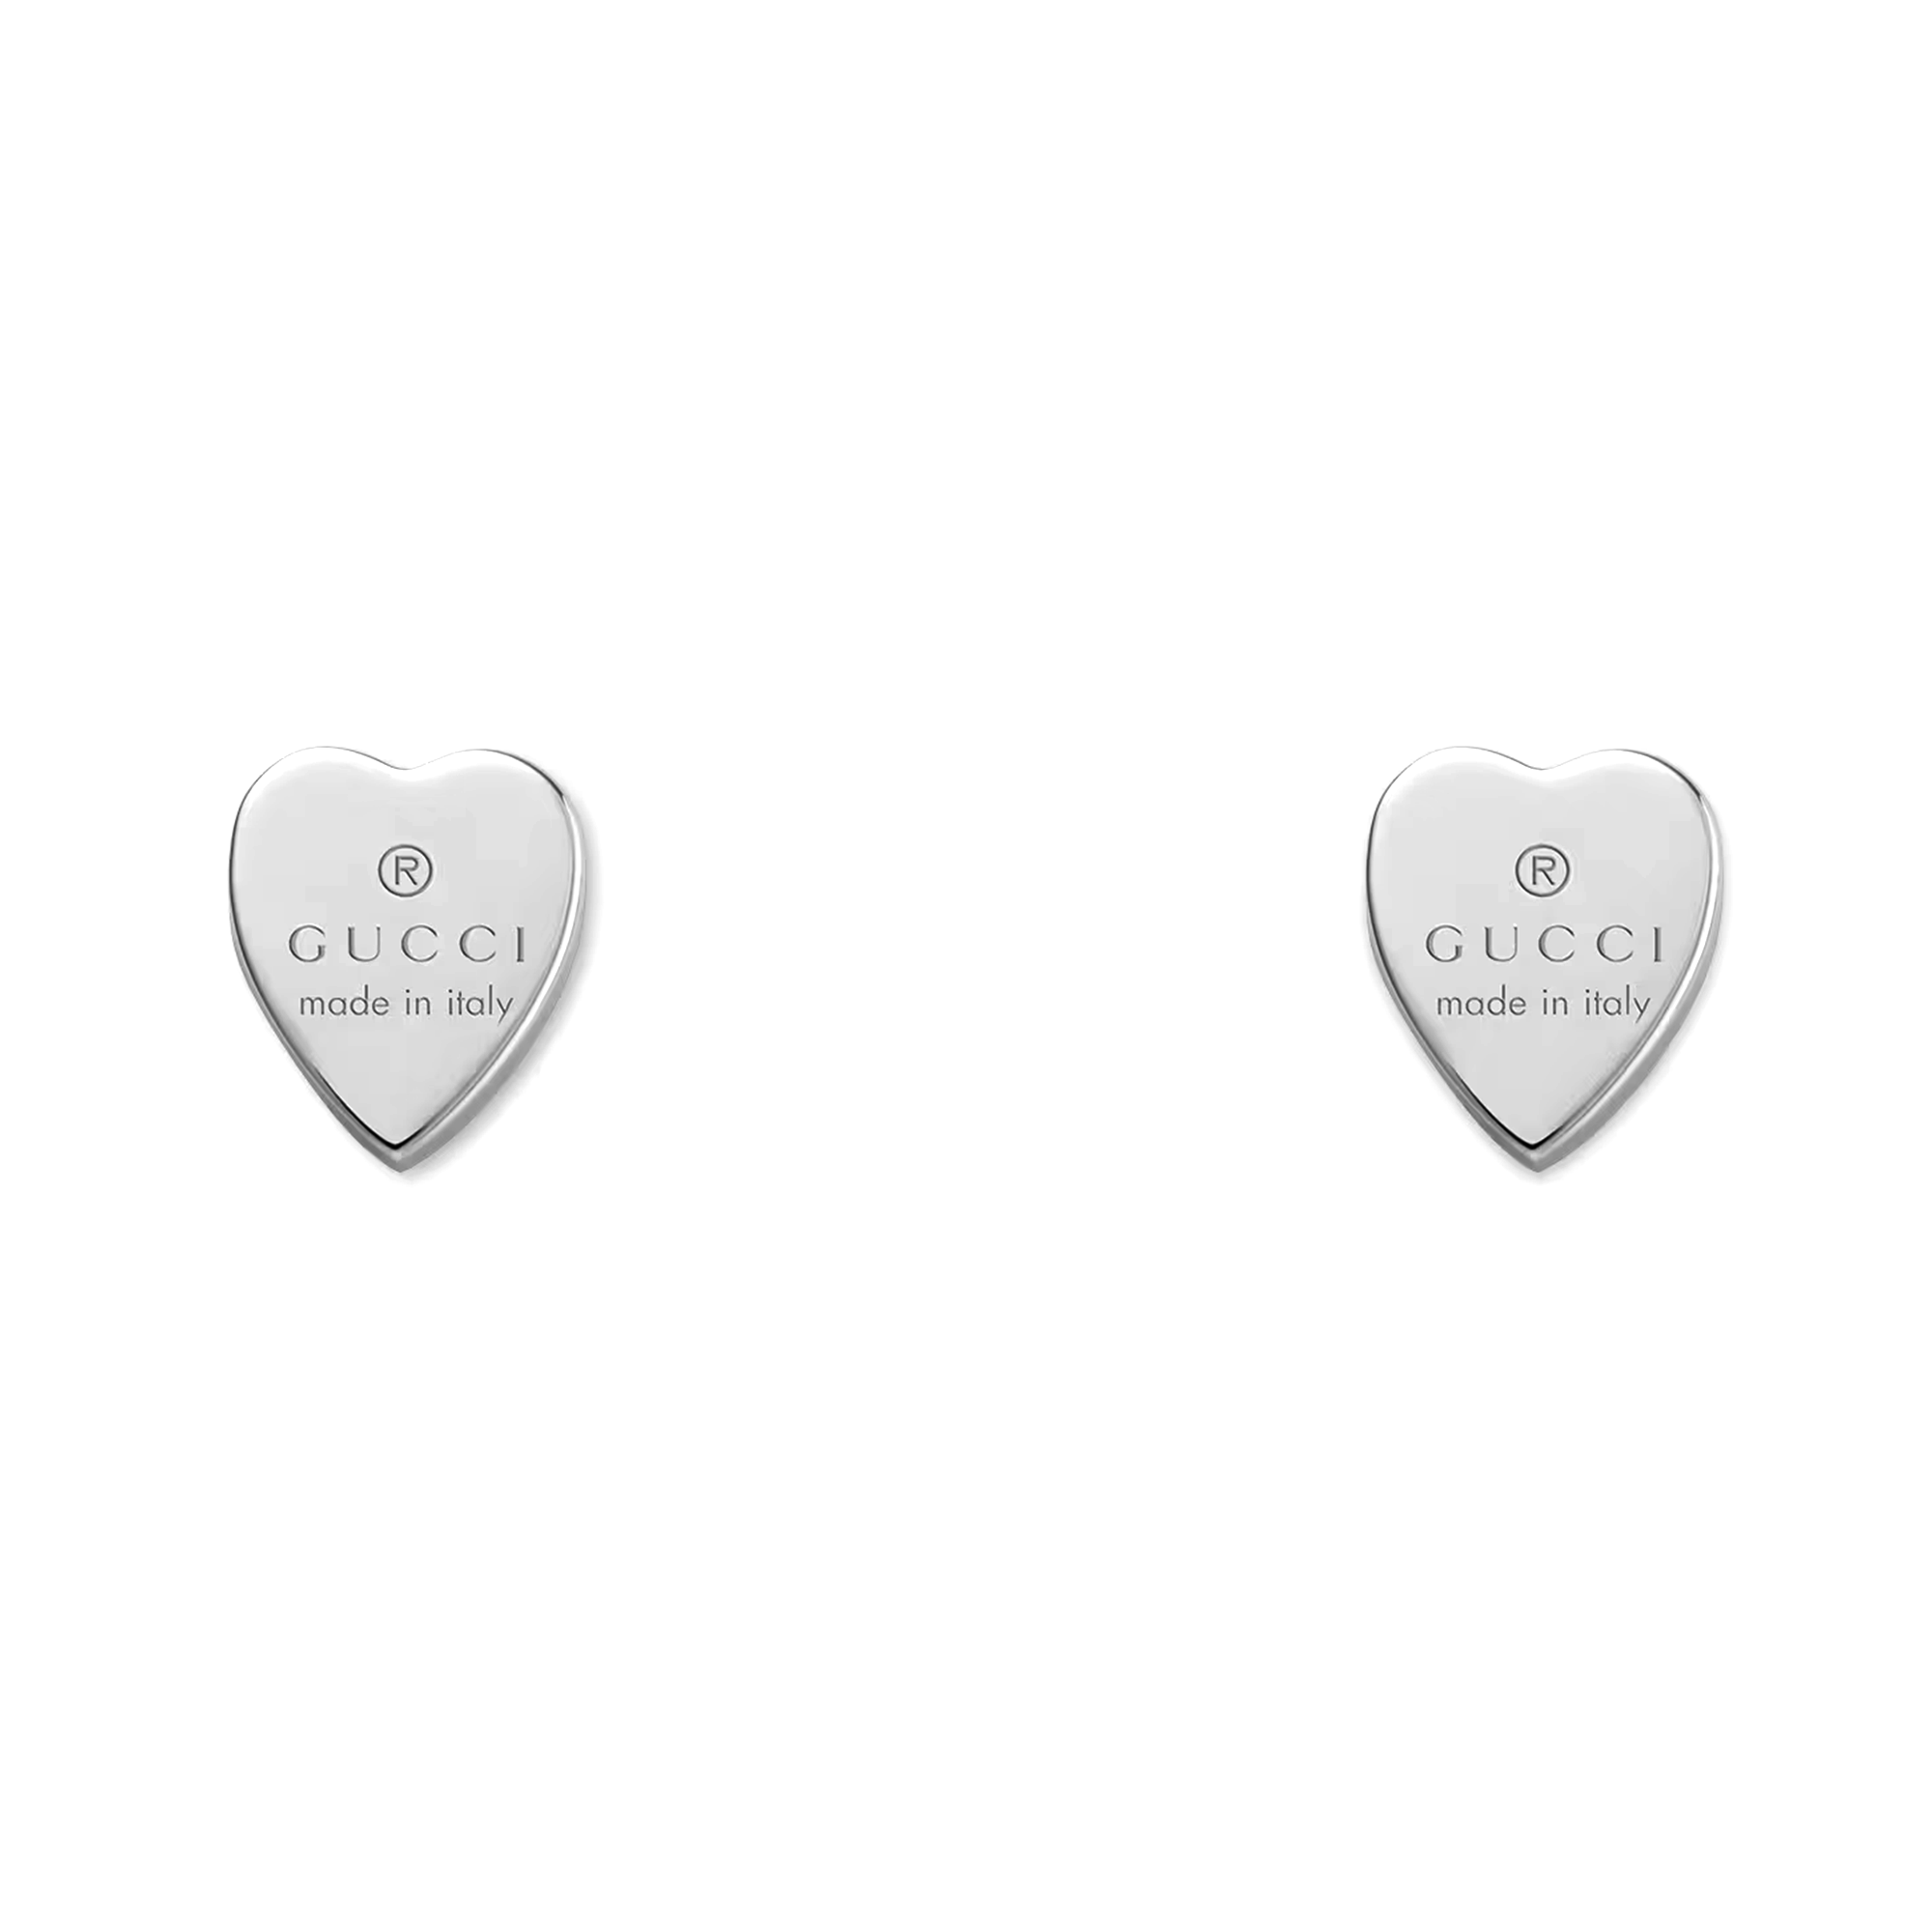 Trademark Sterling Silver Heart Stud Earrings